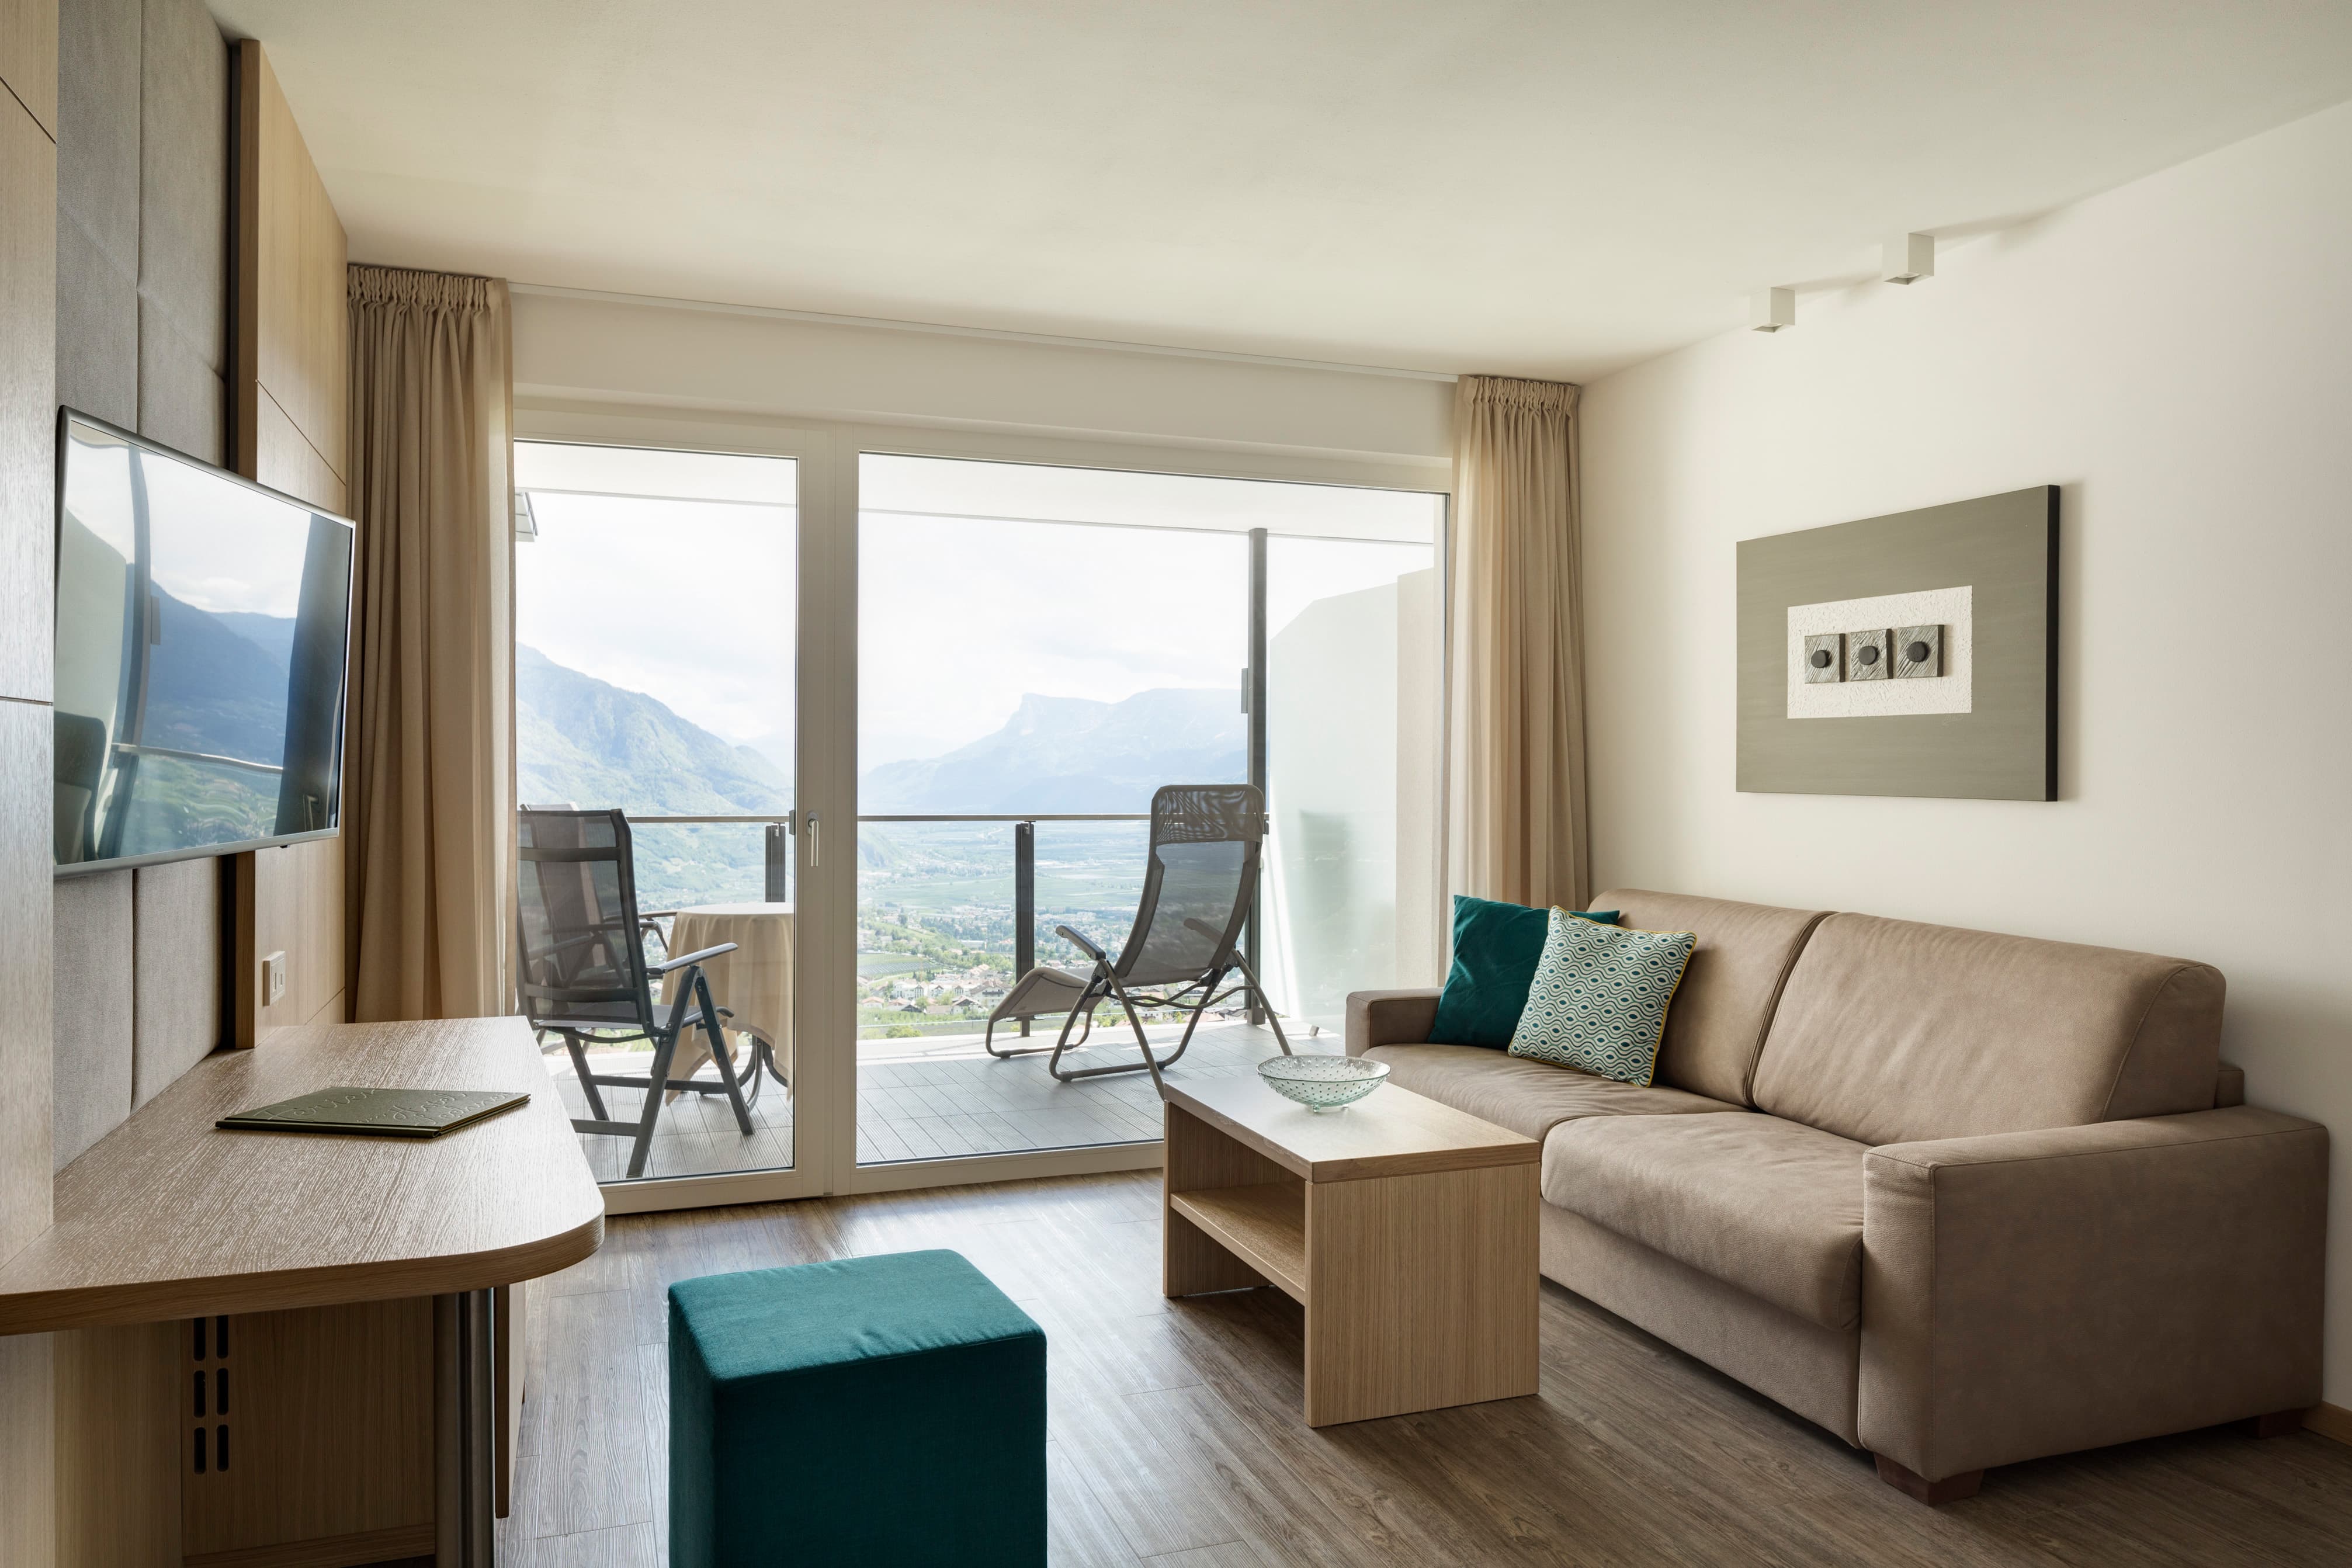 Komfortzimmer Ifinger Plus Wohnbereich TV Couch Balkon